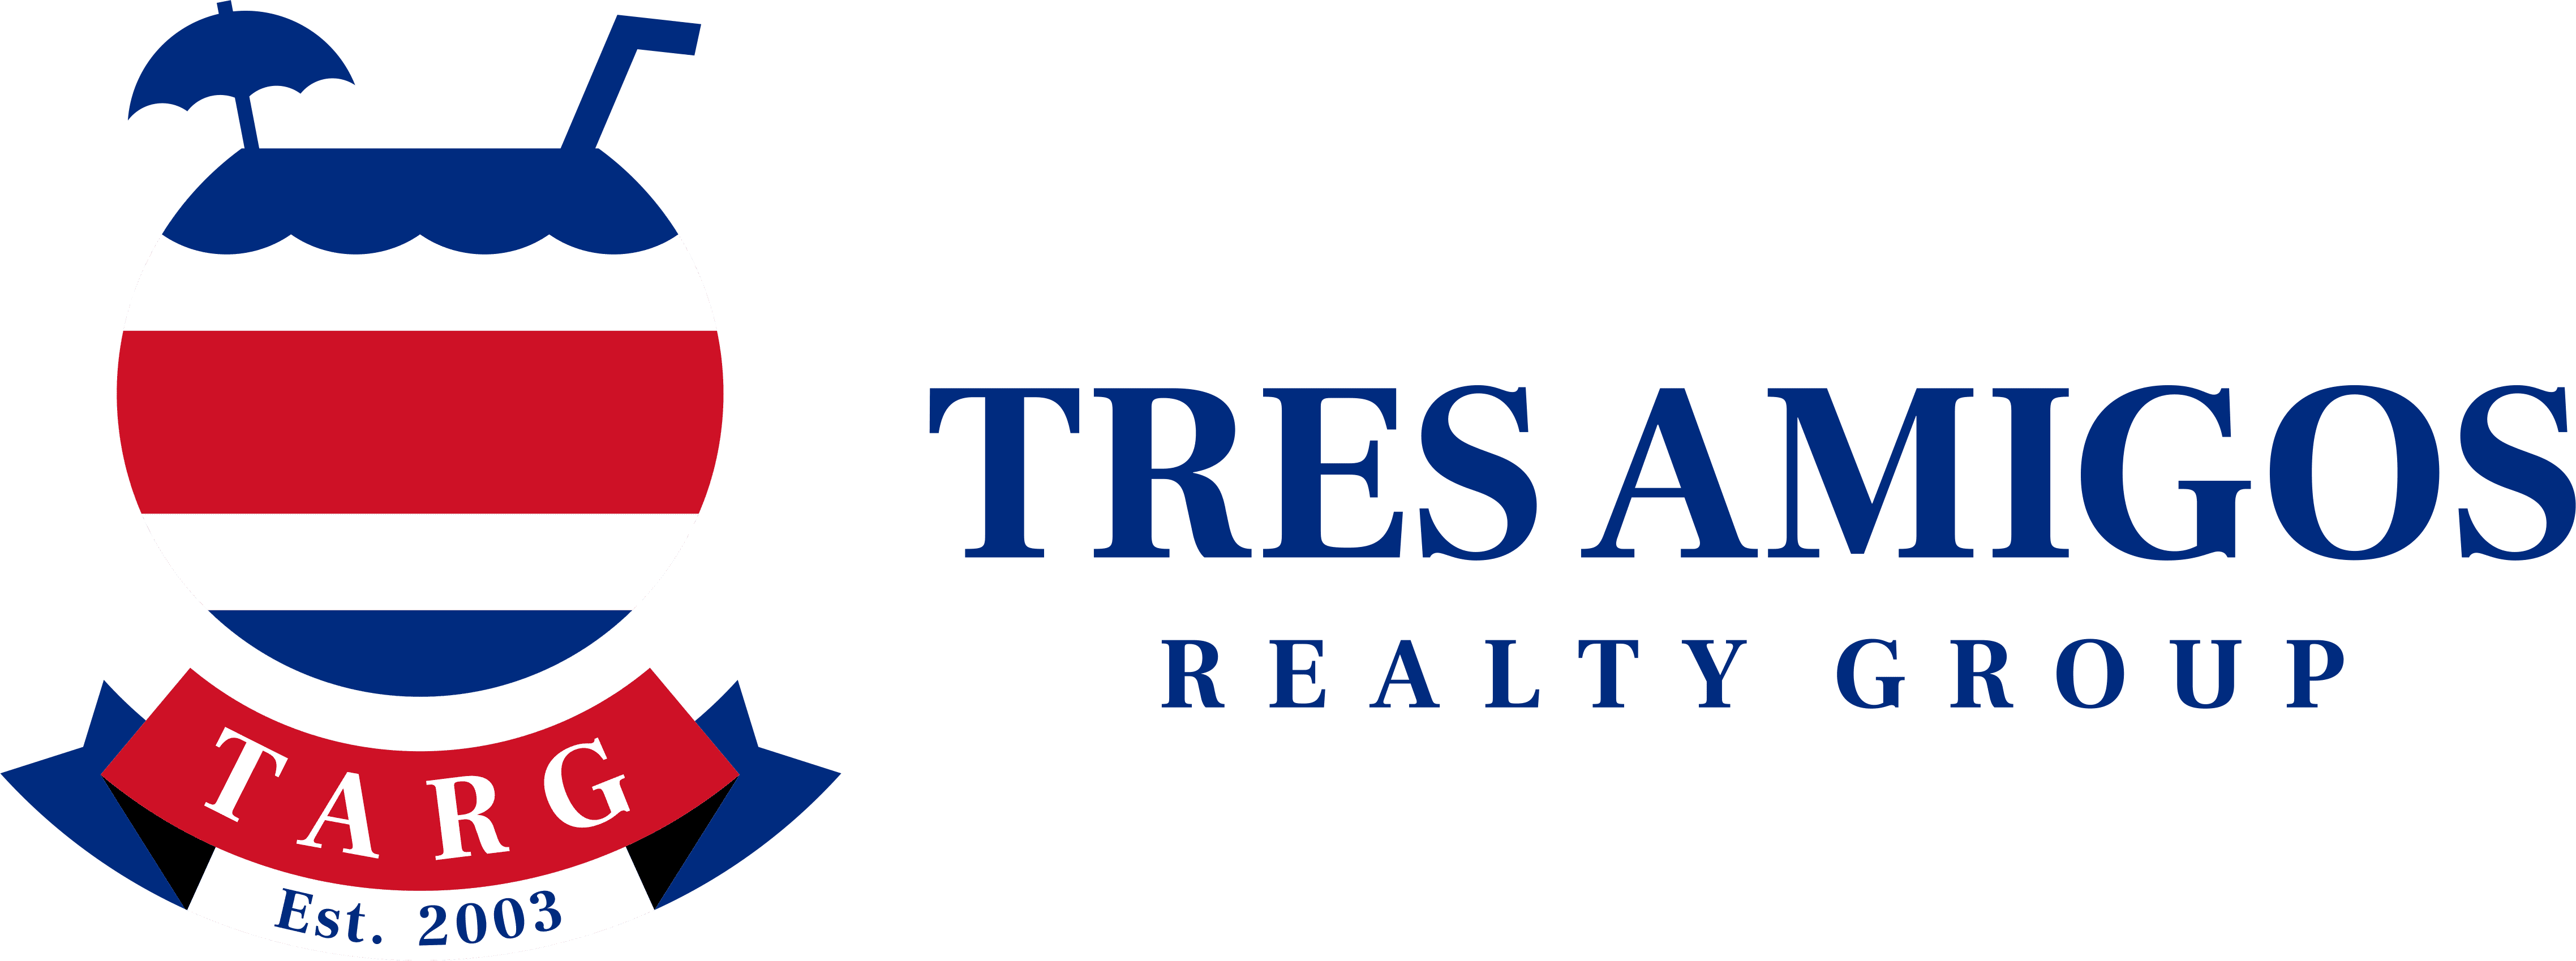 Compañía de bienes raíces en Costa Rica Tres Amigos Realty